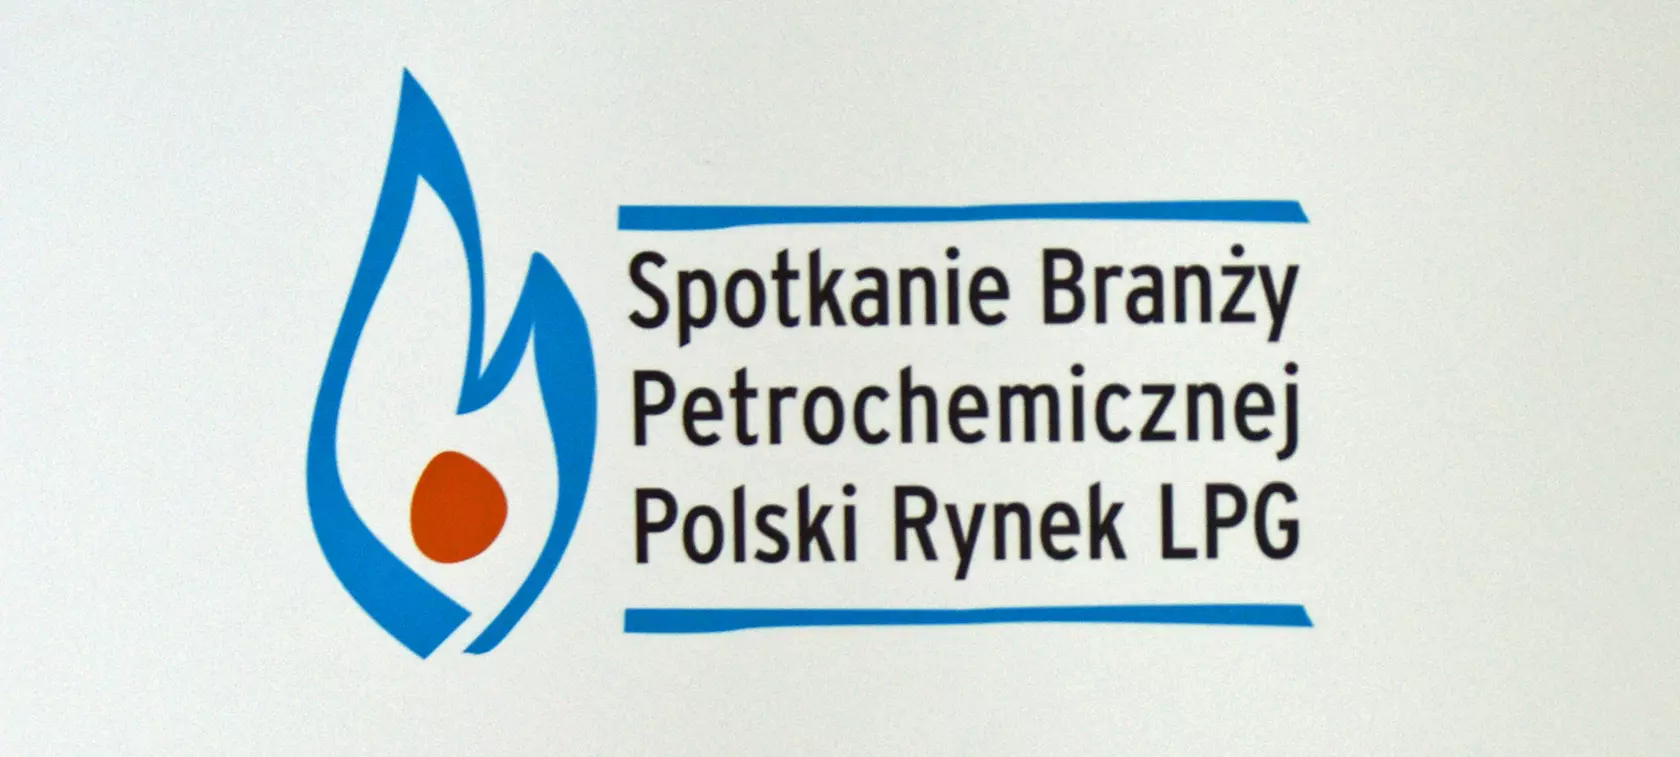 Polski Rynek LPG 2014 - stabilizacja trwa